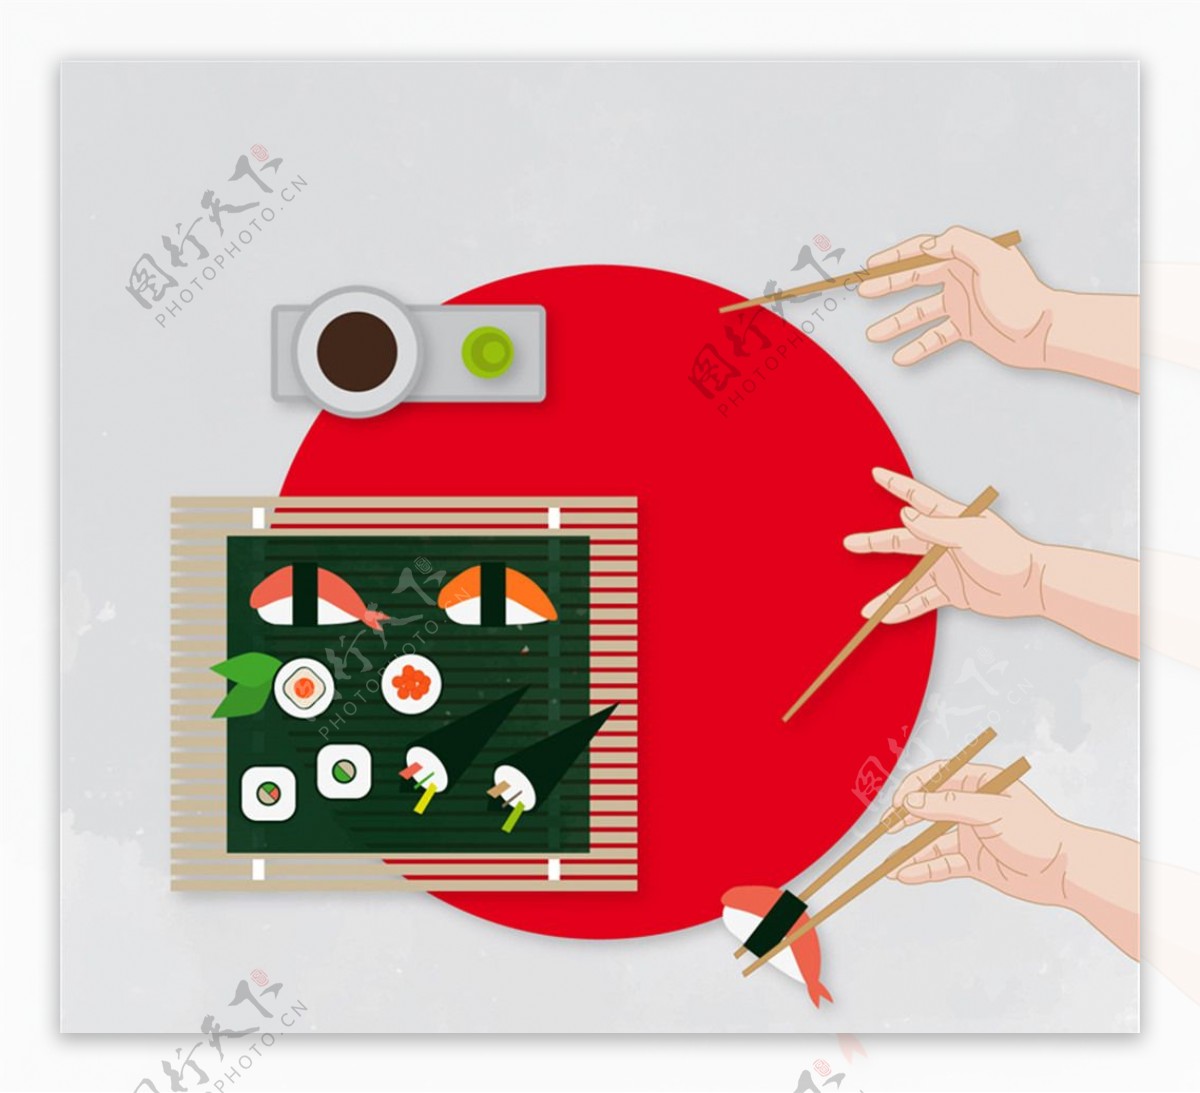 日式料理和筷子的用法矢量素材